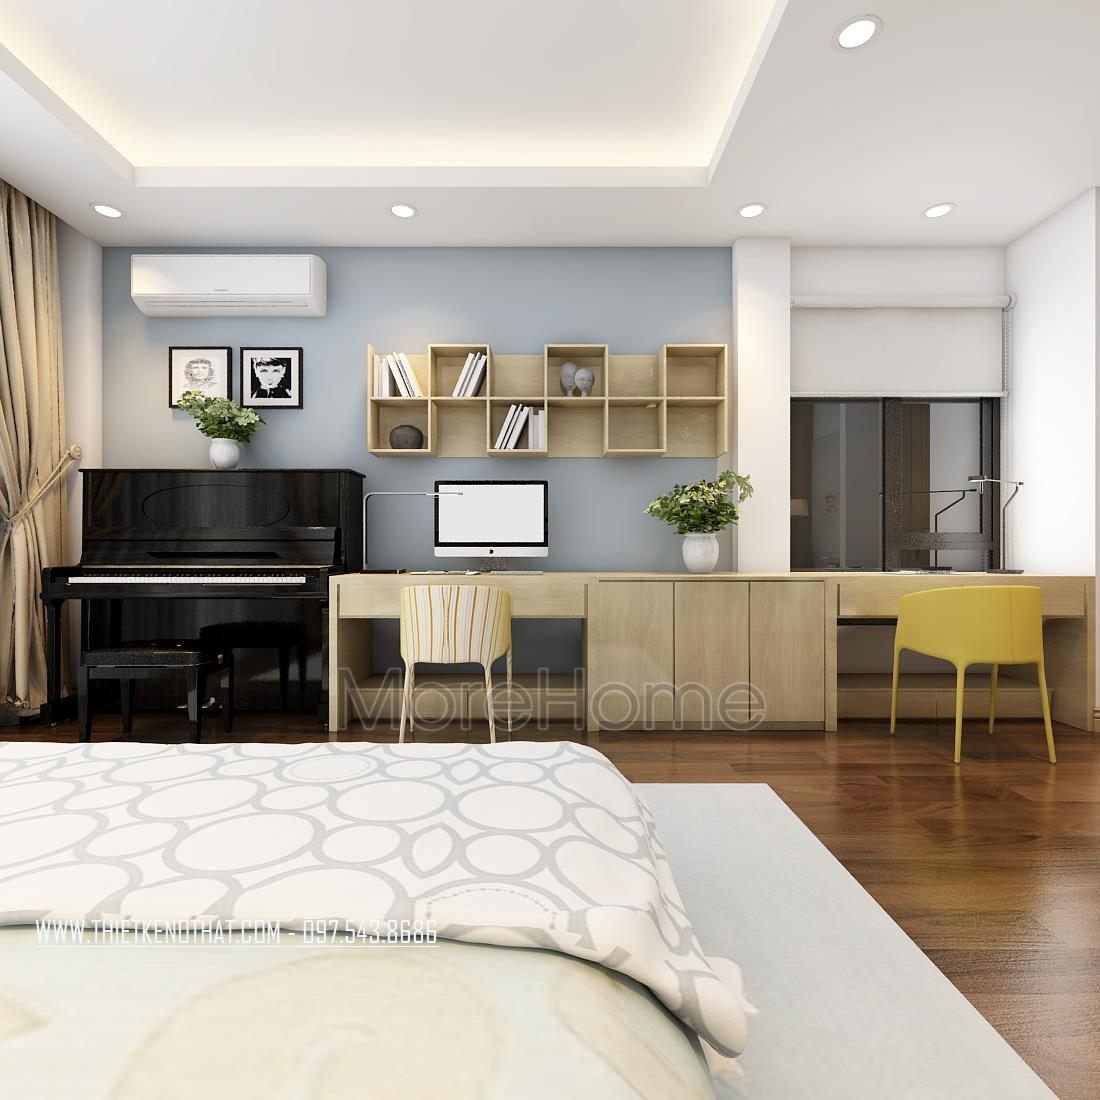 Thiết kế nội thất phòng khách nhà phố Long Biên